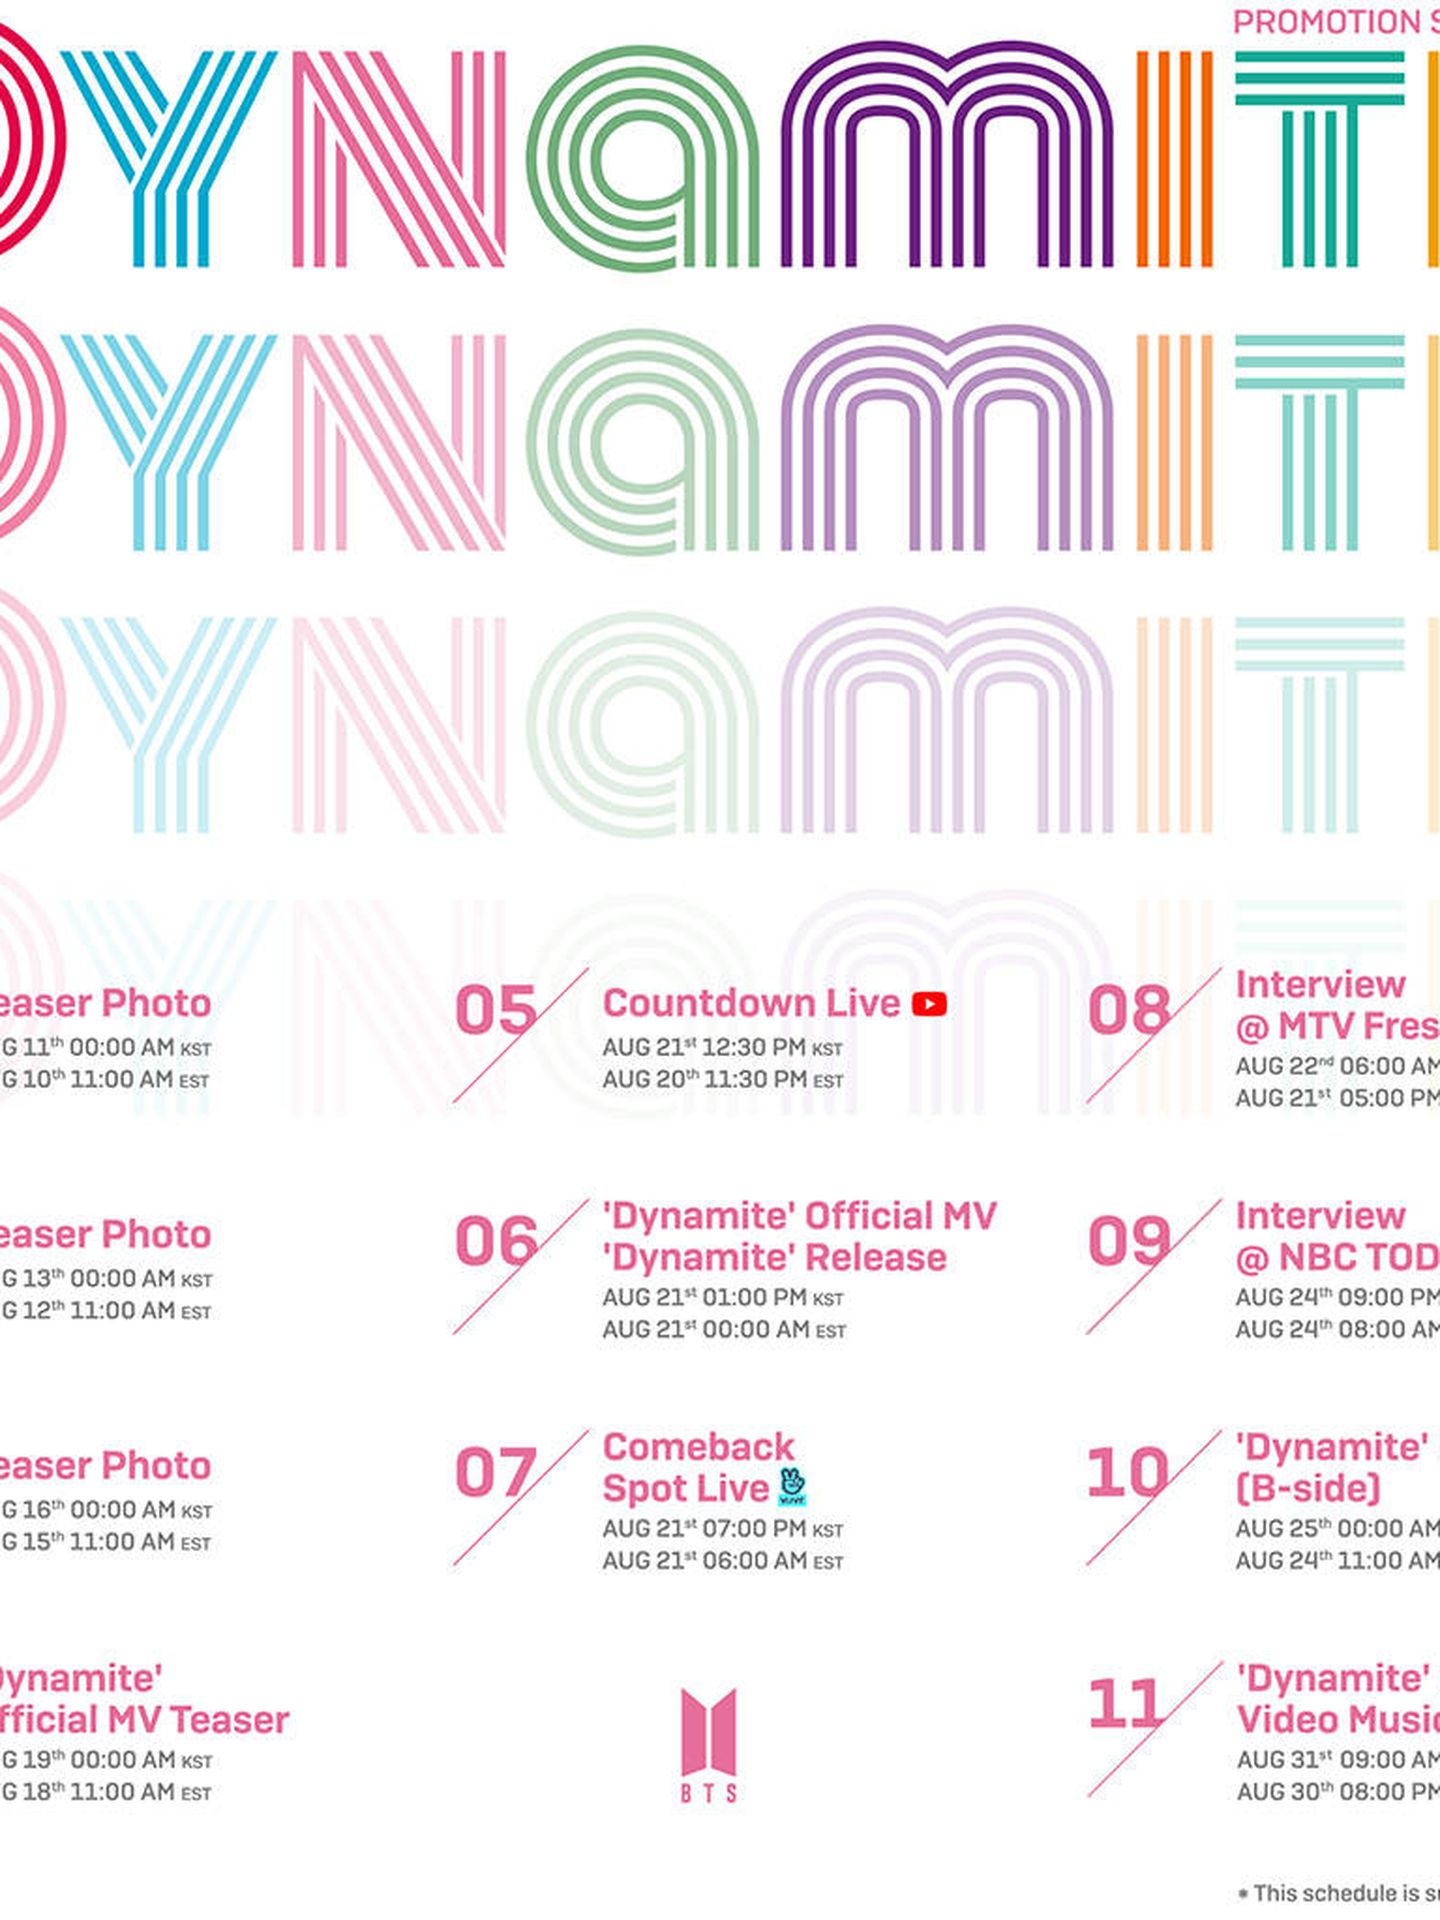 Calendario de la promoción de la canción 'Dynamite'